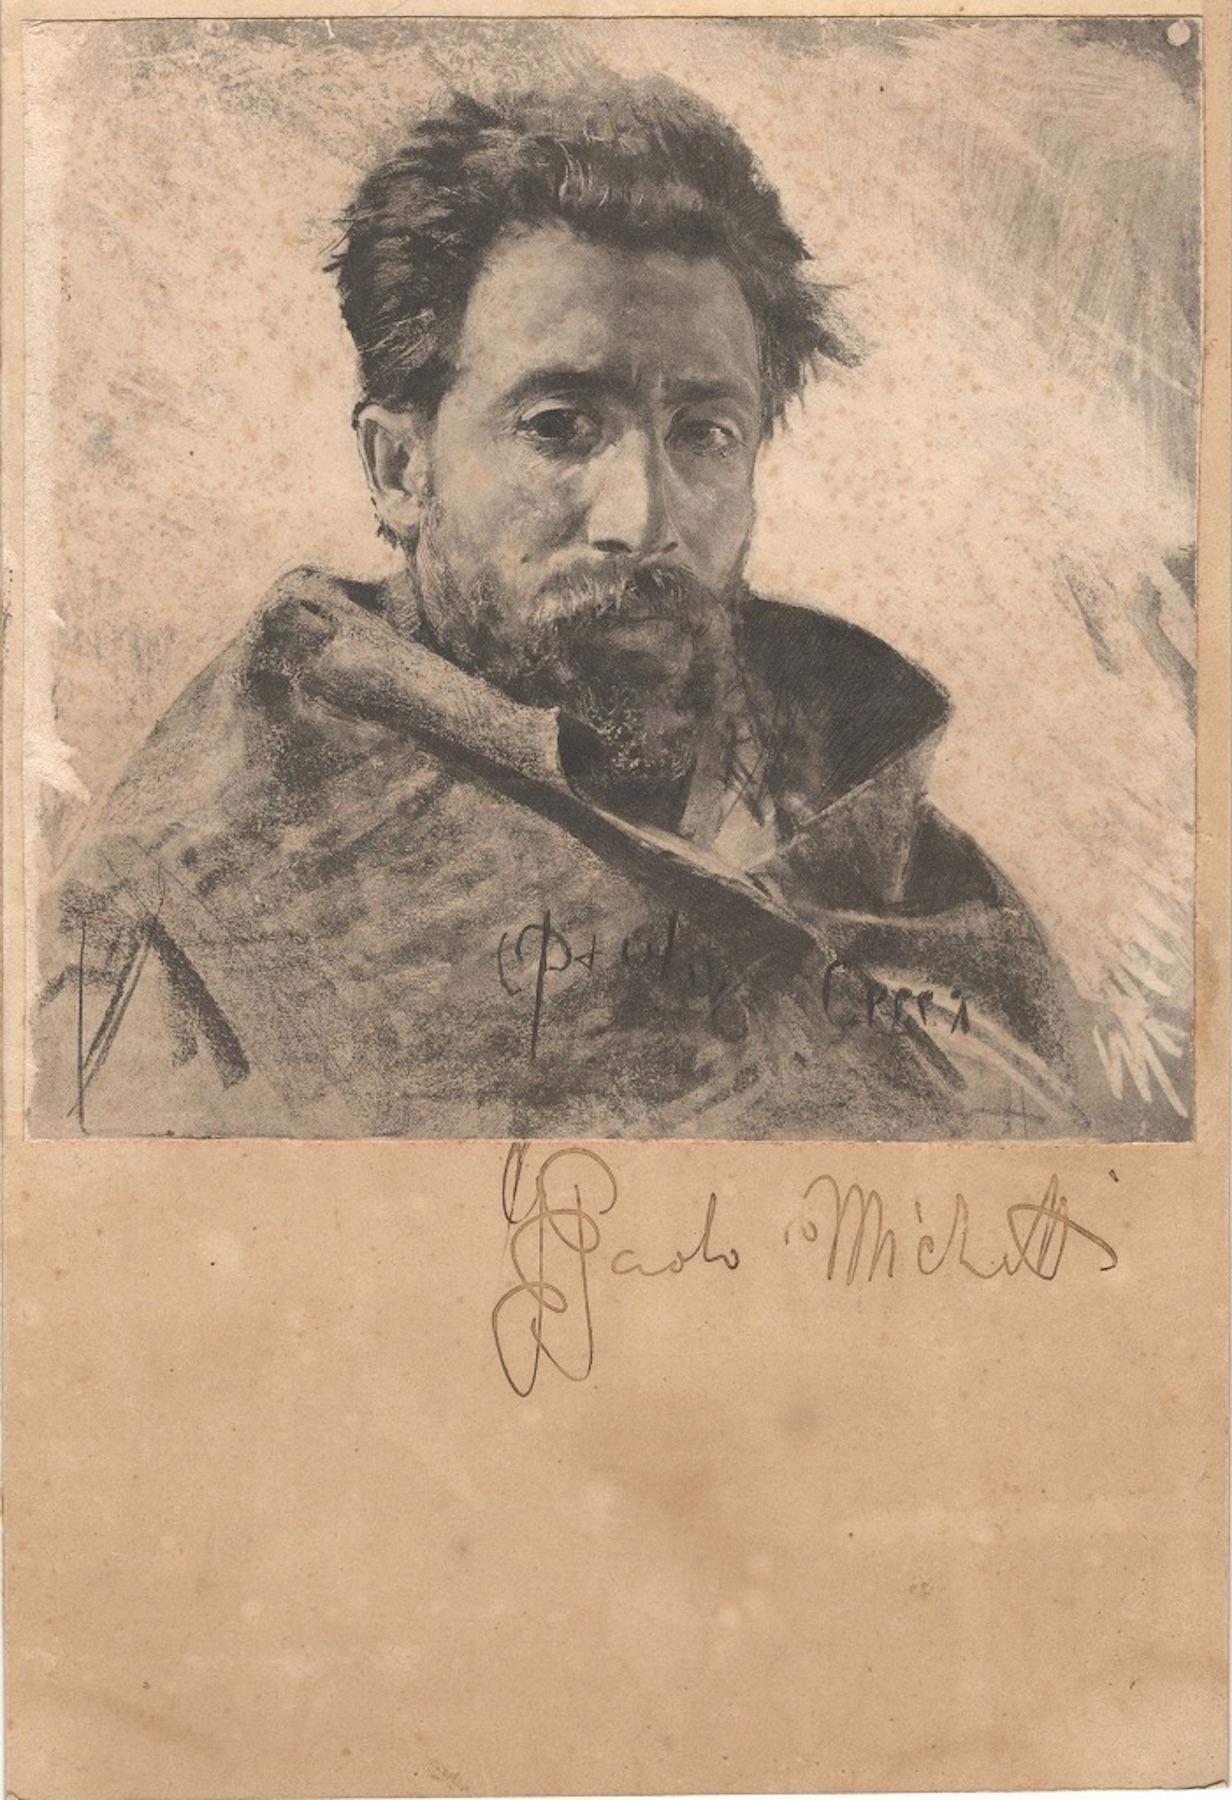 Francesco Paolo Michetti Figurative Art - Portrait of Man - Original Pencil and Charcoal Drawing by F.P. Michetti - 1890s